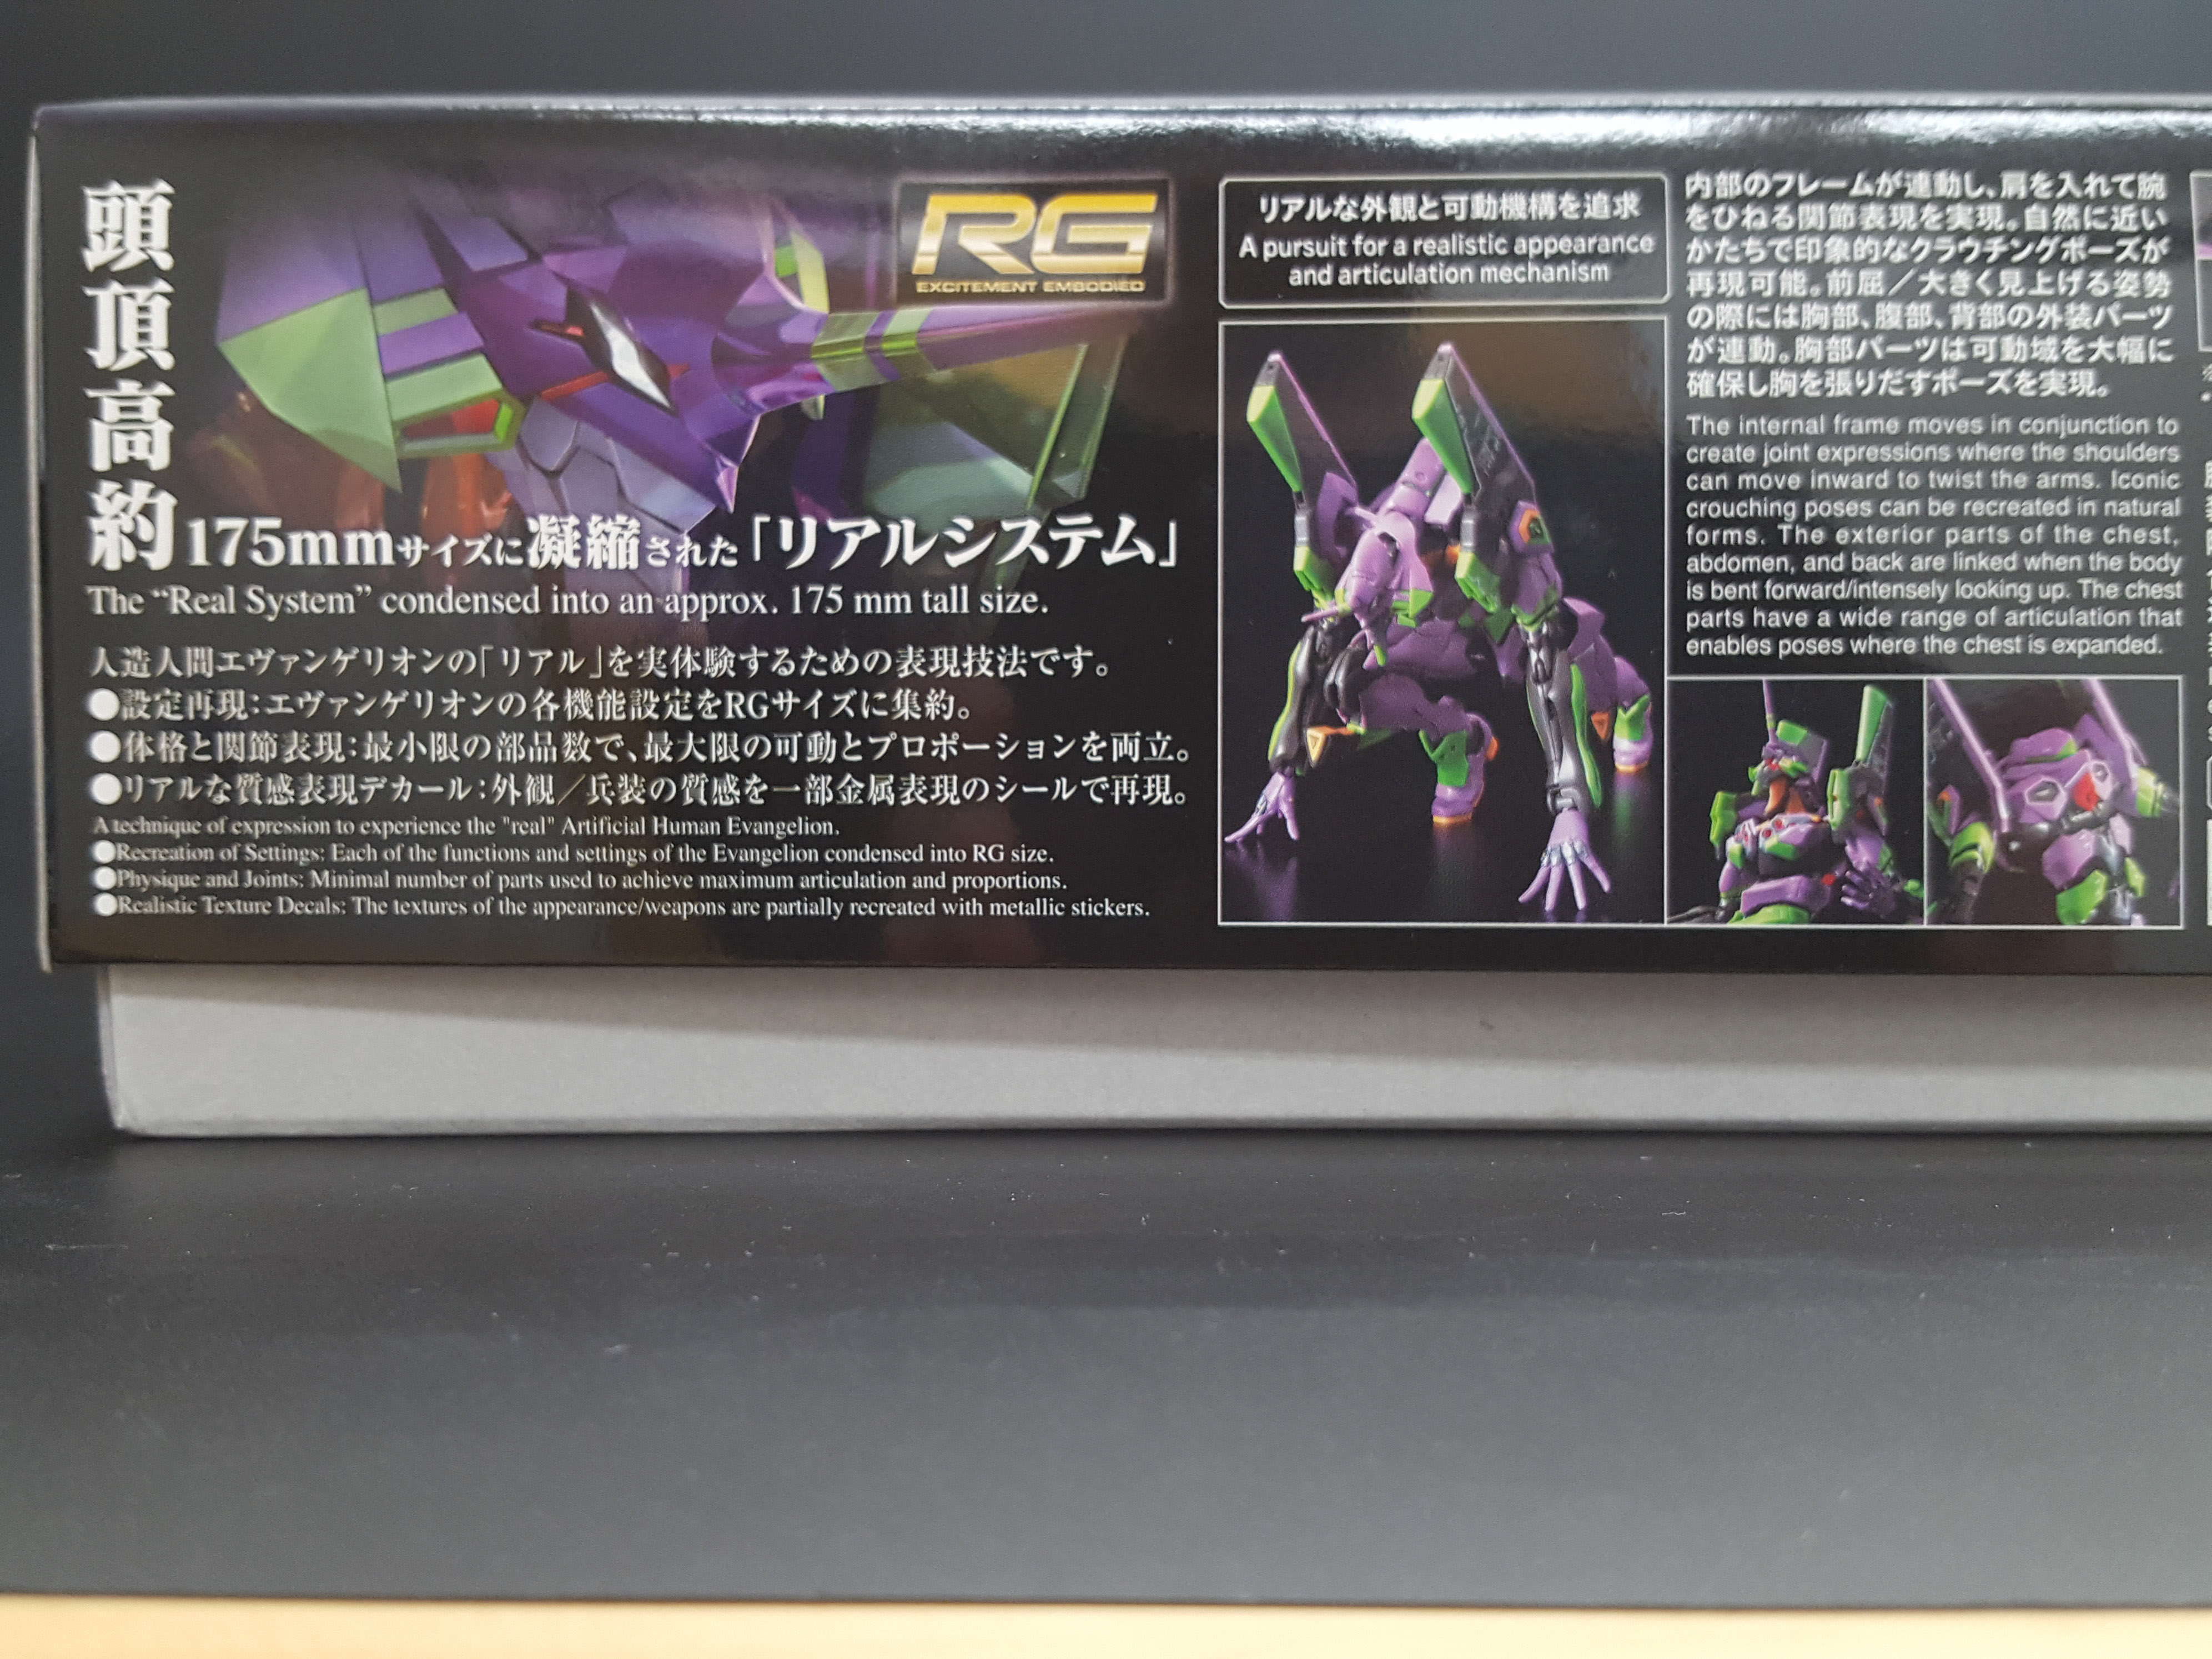 RG All-Purpose Humanoid Decisive Battle Weapon Artificial Human Evangelion Unit 01 DX Transporter Set